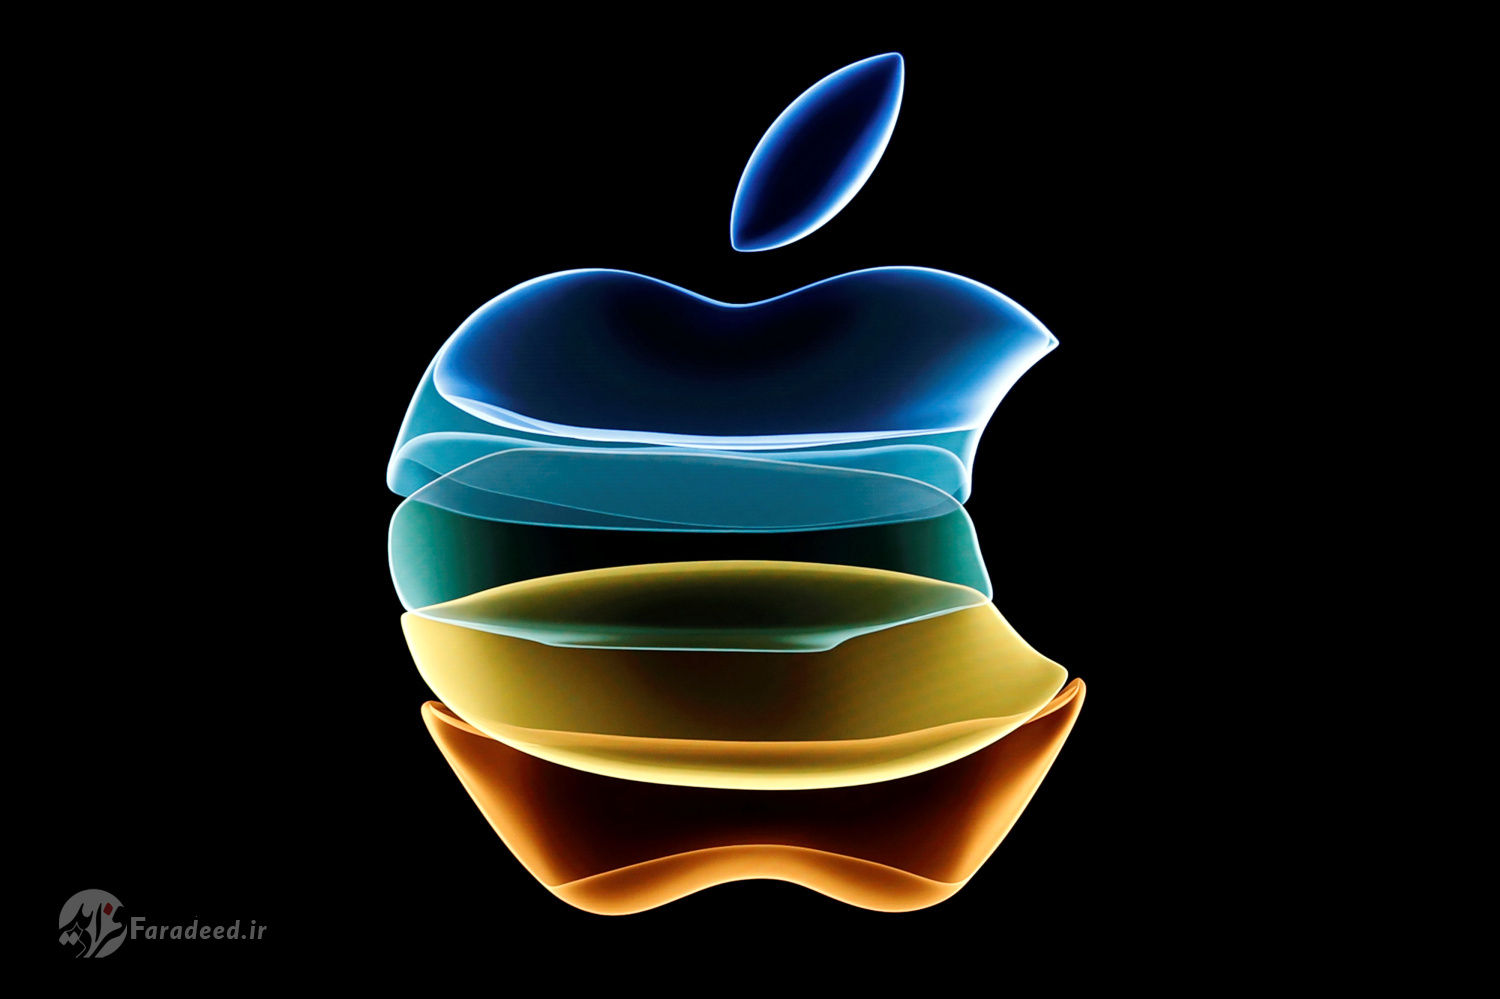 "اپل" صاحب یک فناوری جدید "پادکست" شد!